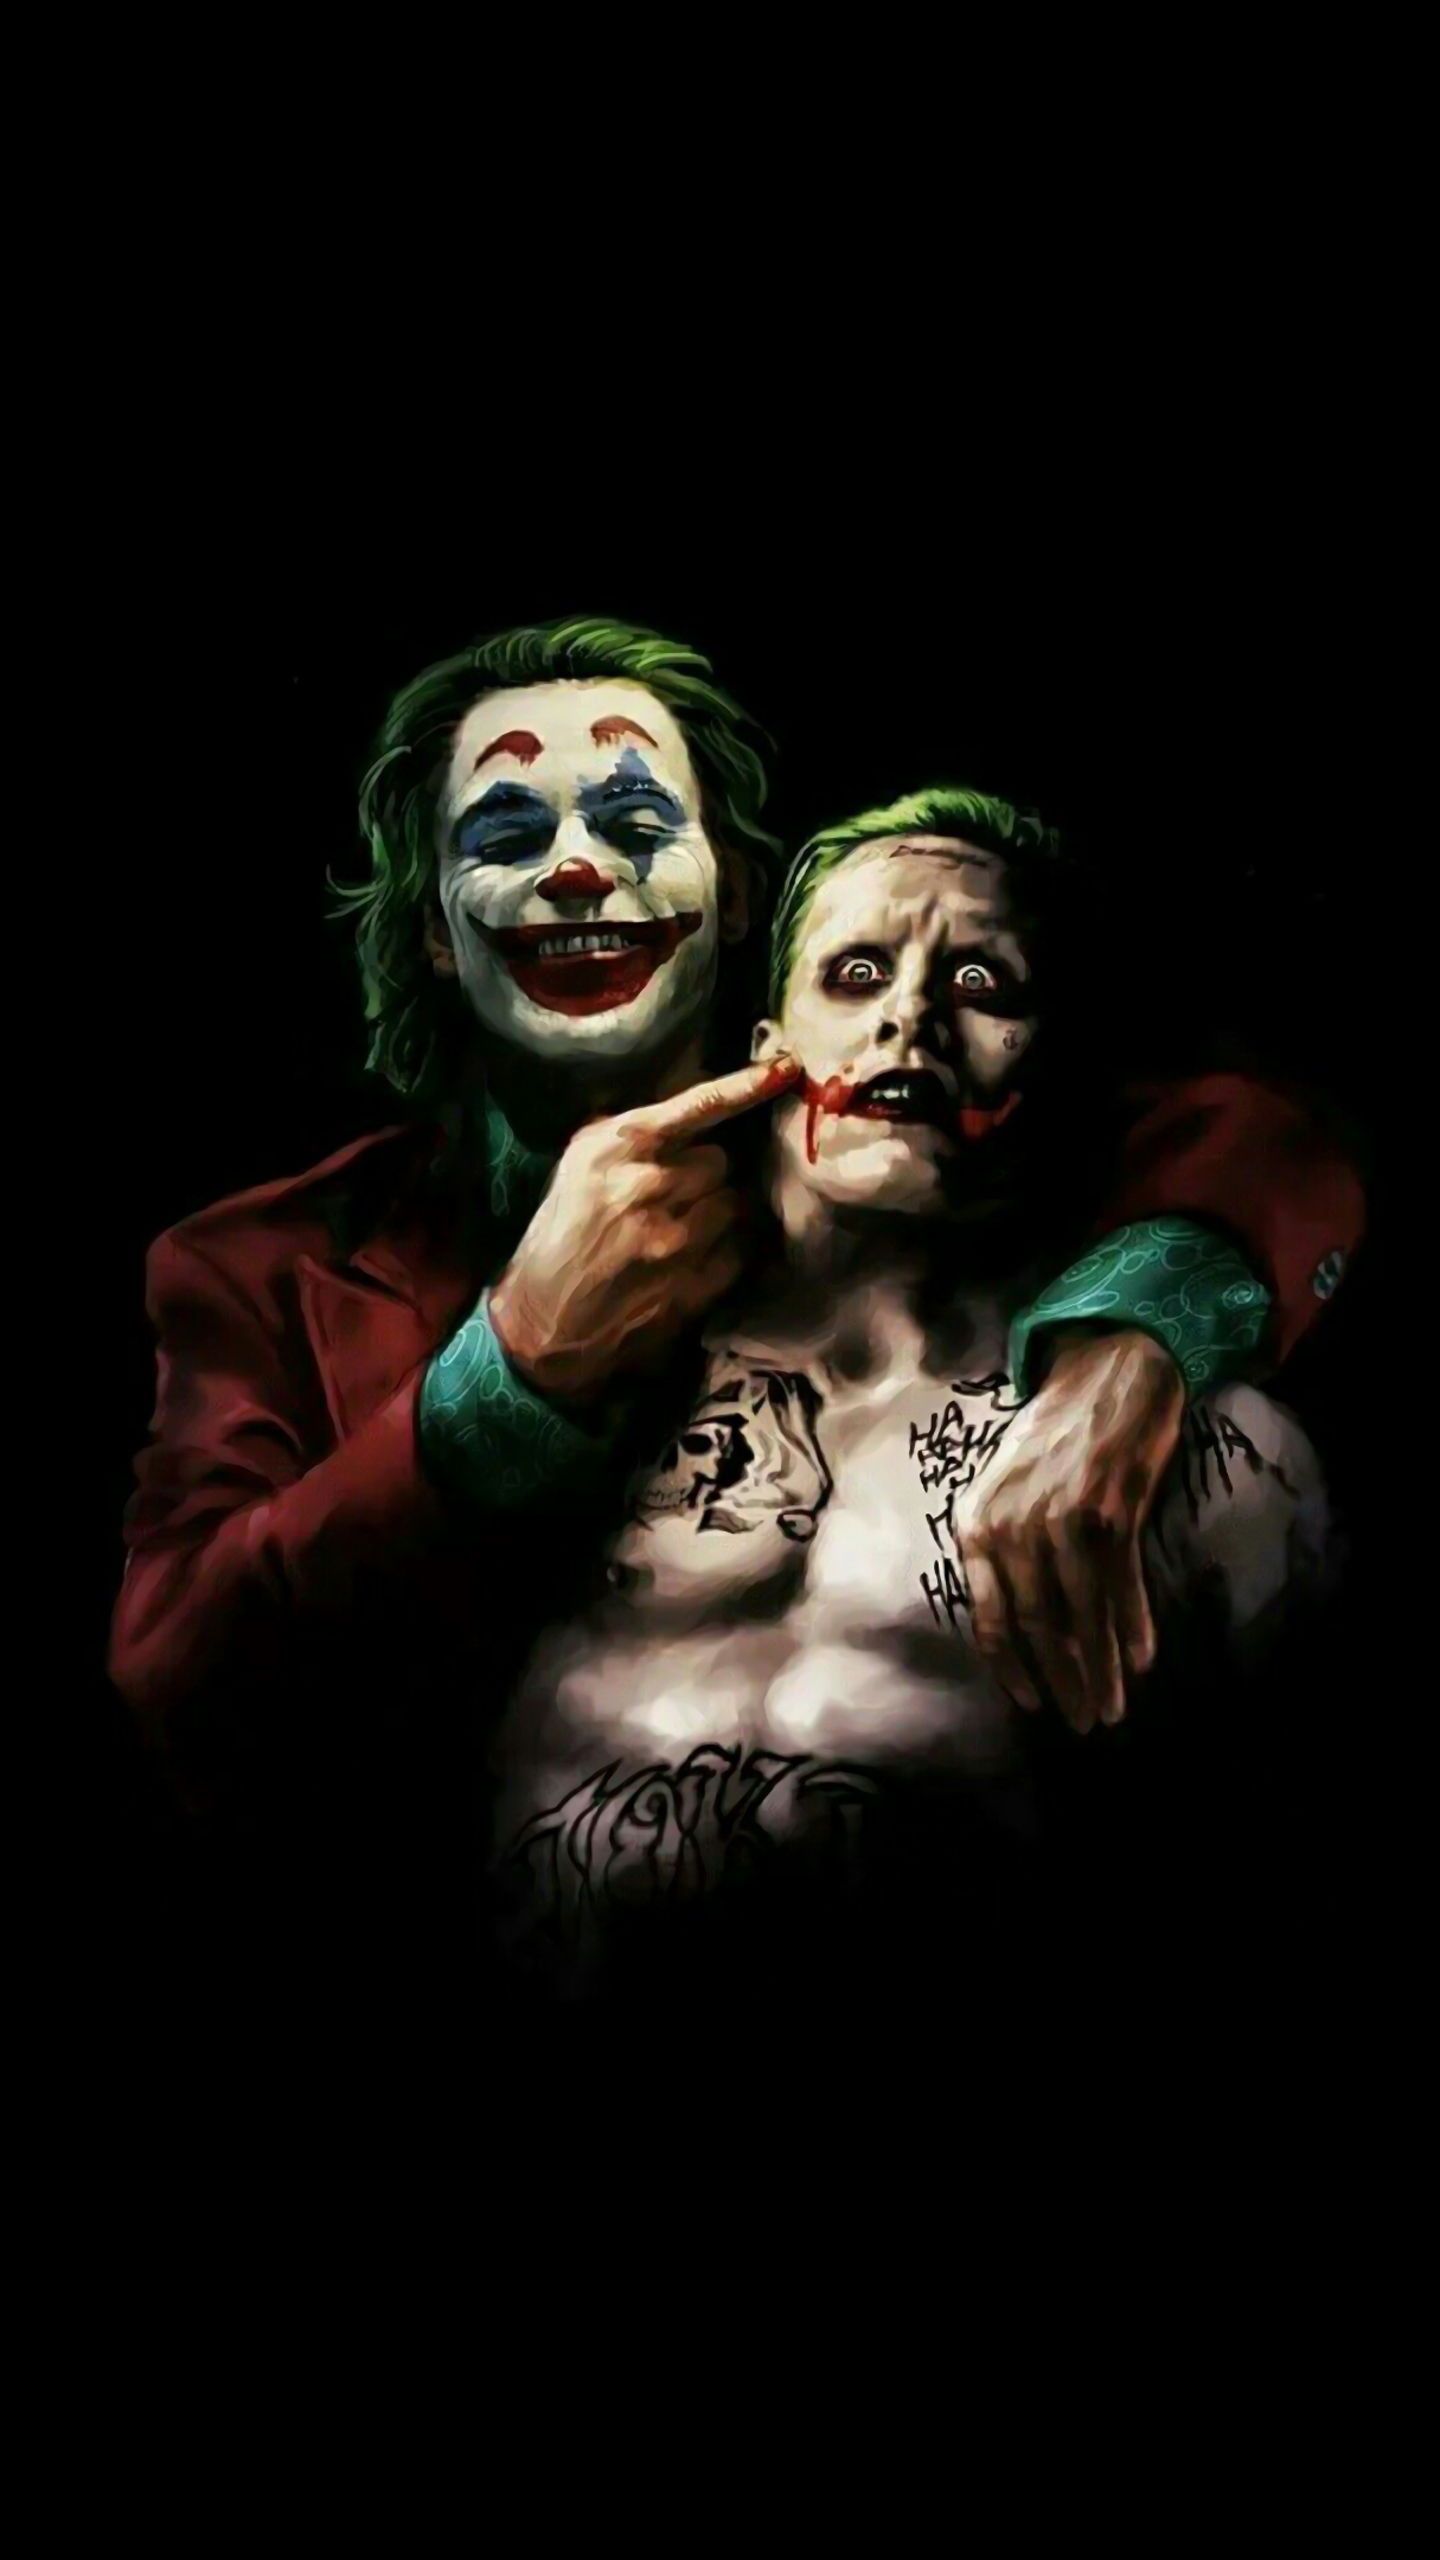 Top Joker Quotes Of All Time by Heath Ledger. Joker image, Joker